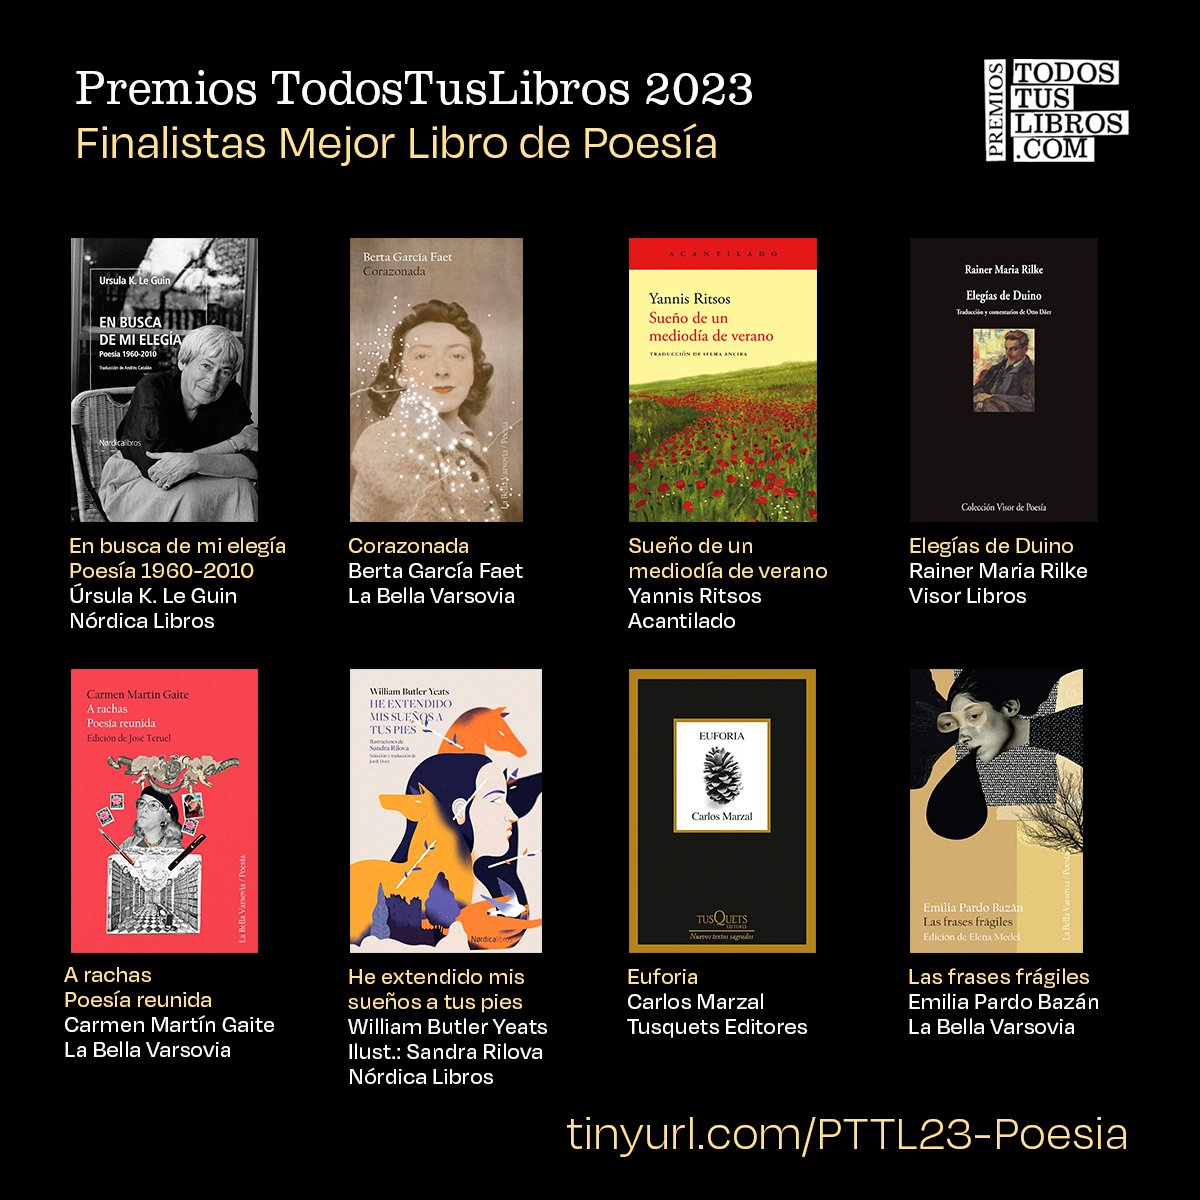 🏆📚 Llegamos al turno de la Poesía. Estas son las 8 obras finalistas en la categoría 'Mejor Libro de Poesía' de los Premios TodosTusLibros 2023. Todas ellas disponibles en tu librería favorita y en TodosTusLibros: 👉 tinyurl.com/PTTL23-Poesia